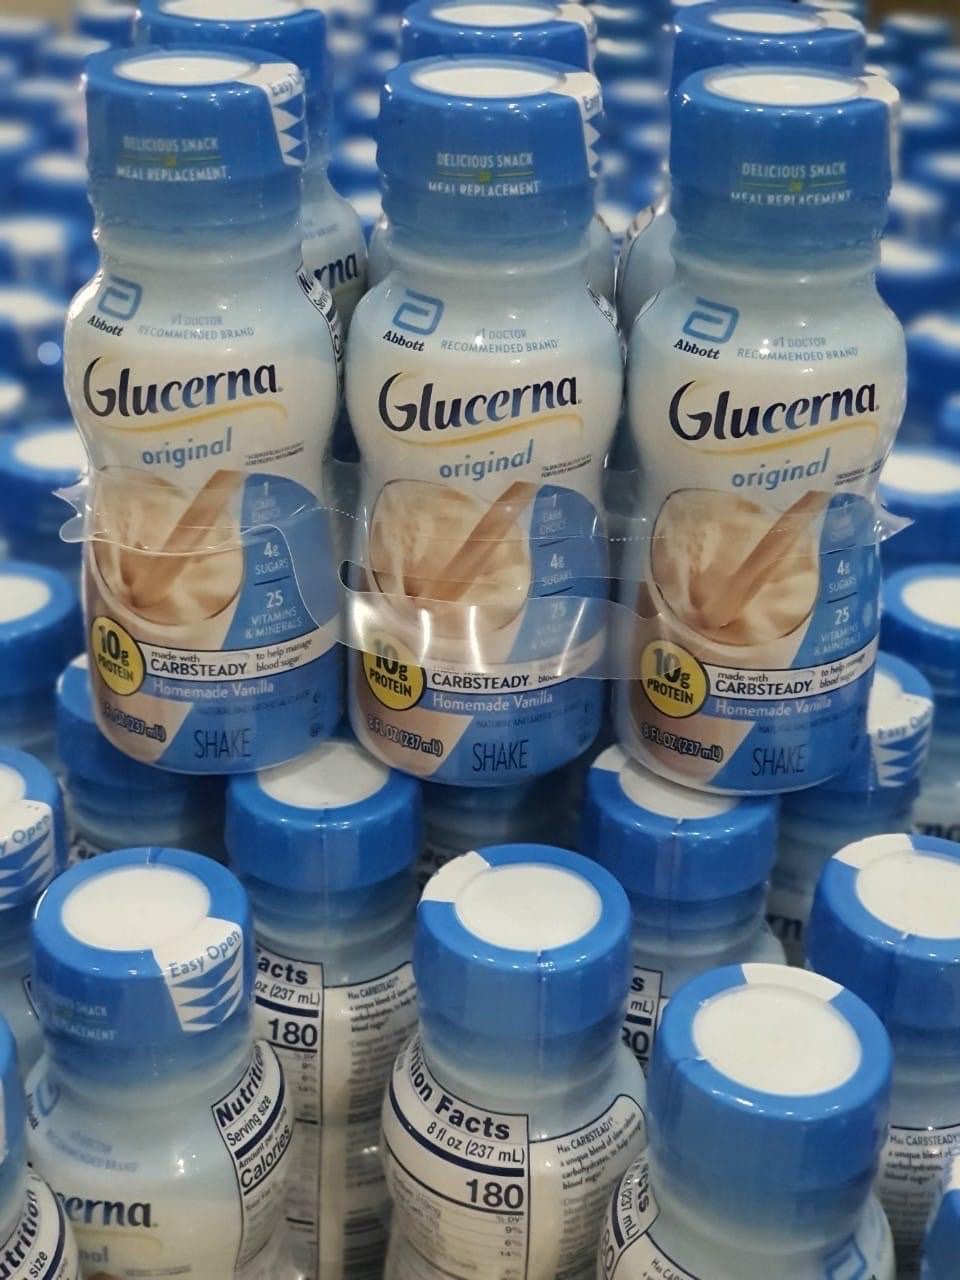 [Mẫu mới date xa] Sữa Glucerna nước Glucerna Shake Original Thùng 24 chai nhựa 237ml dành cho người tiểu đường cần bổ sung khoáng chất và năng lượng [Hàng chuẩn Mỹ]